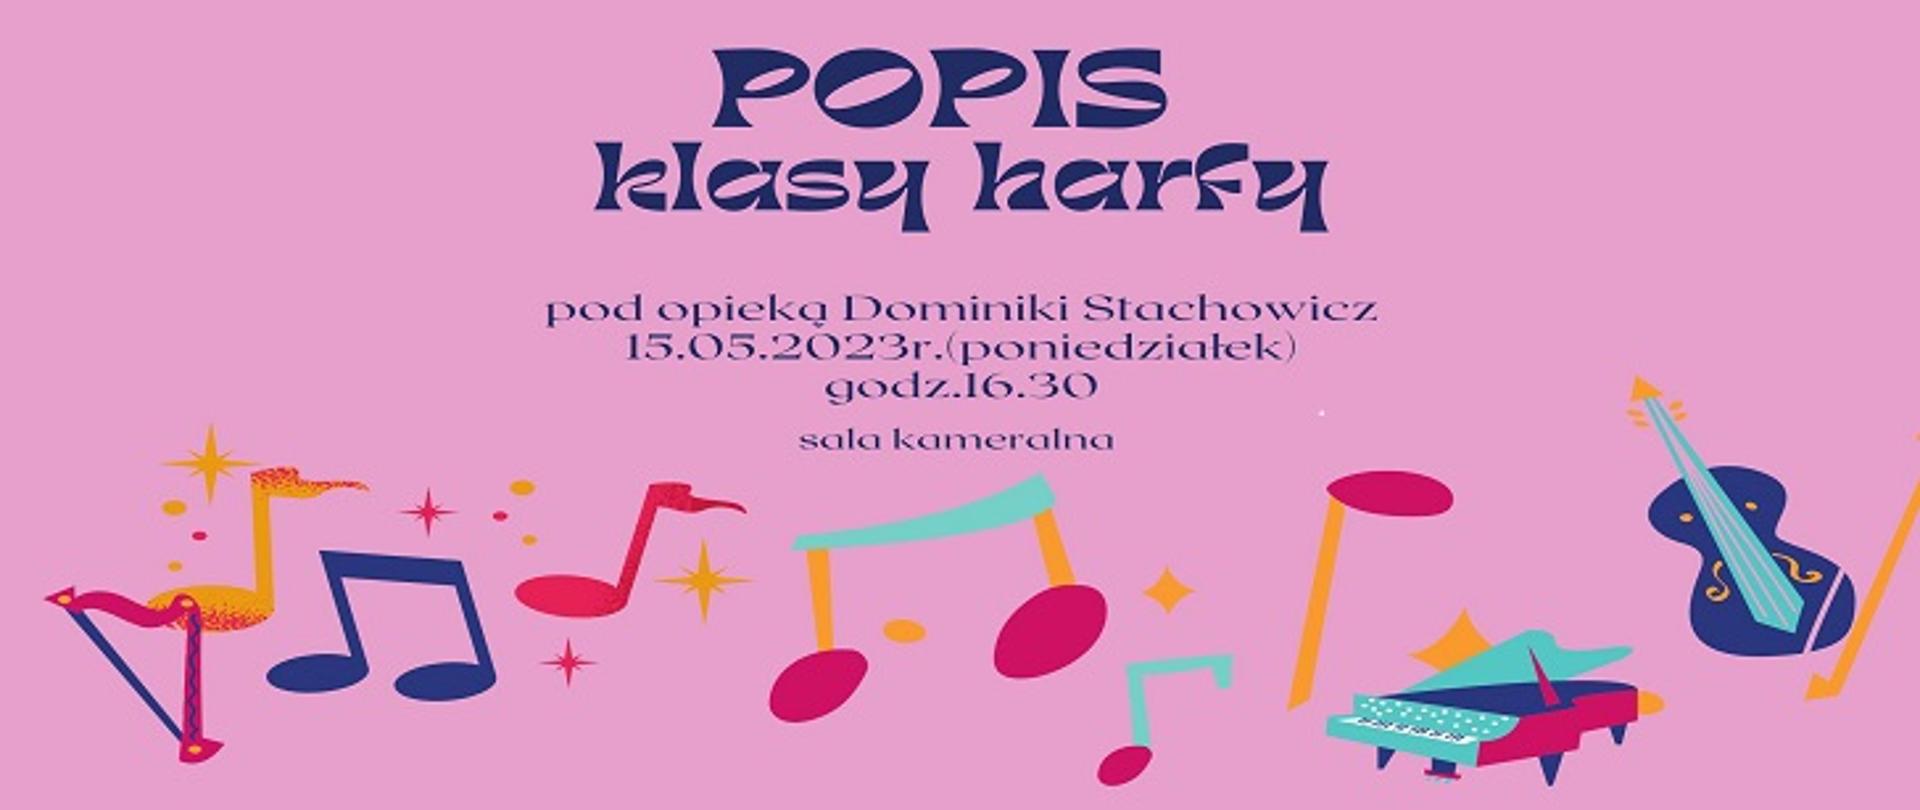 Popis klasy harfy pod opieką Dominiki Stachowicz, 15.05.2023r. (poniedziałek), godz. 16:30, sala kameralna.